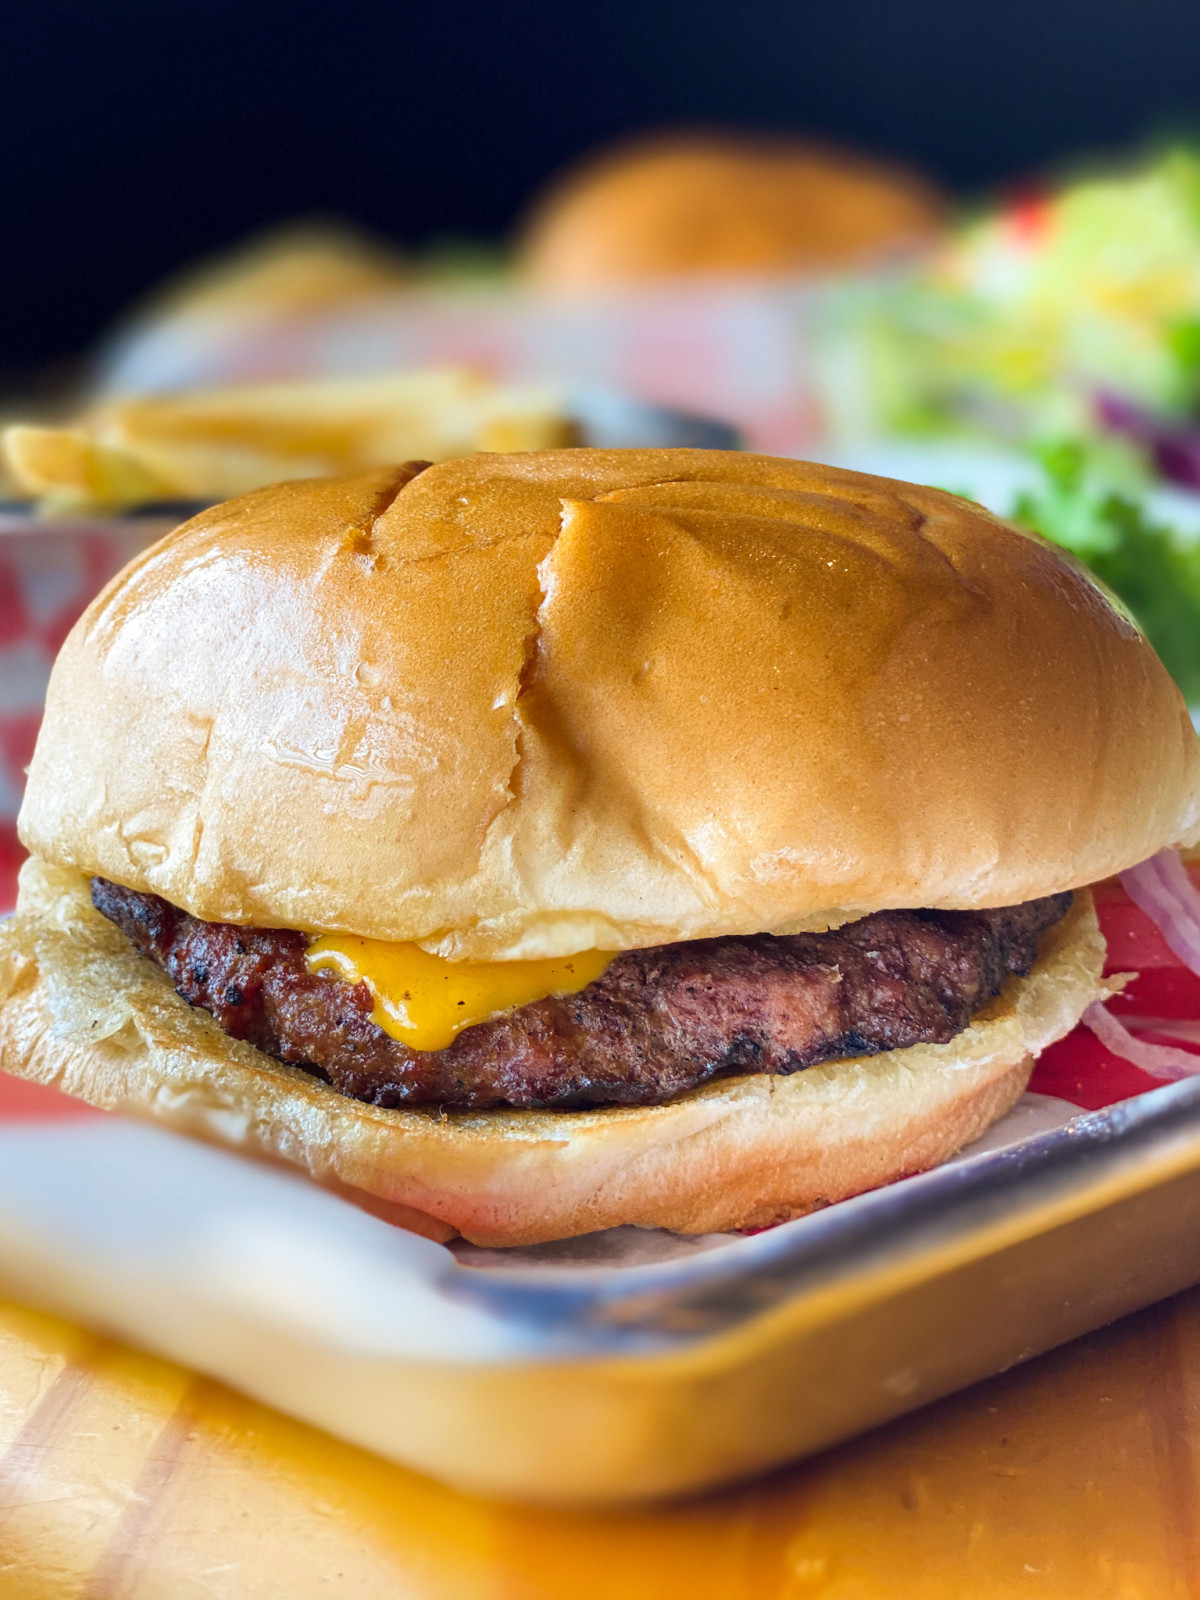 Mesquite-fired Houston burger restaurant serves up new Katy outpost ...